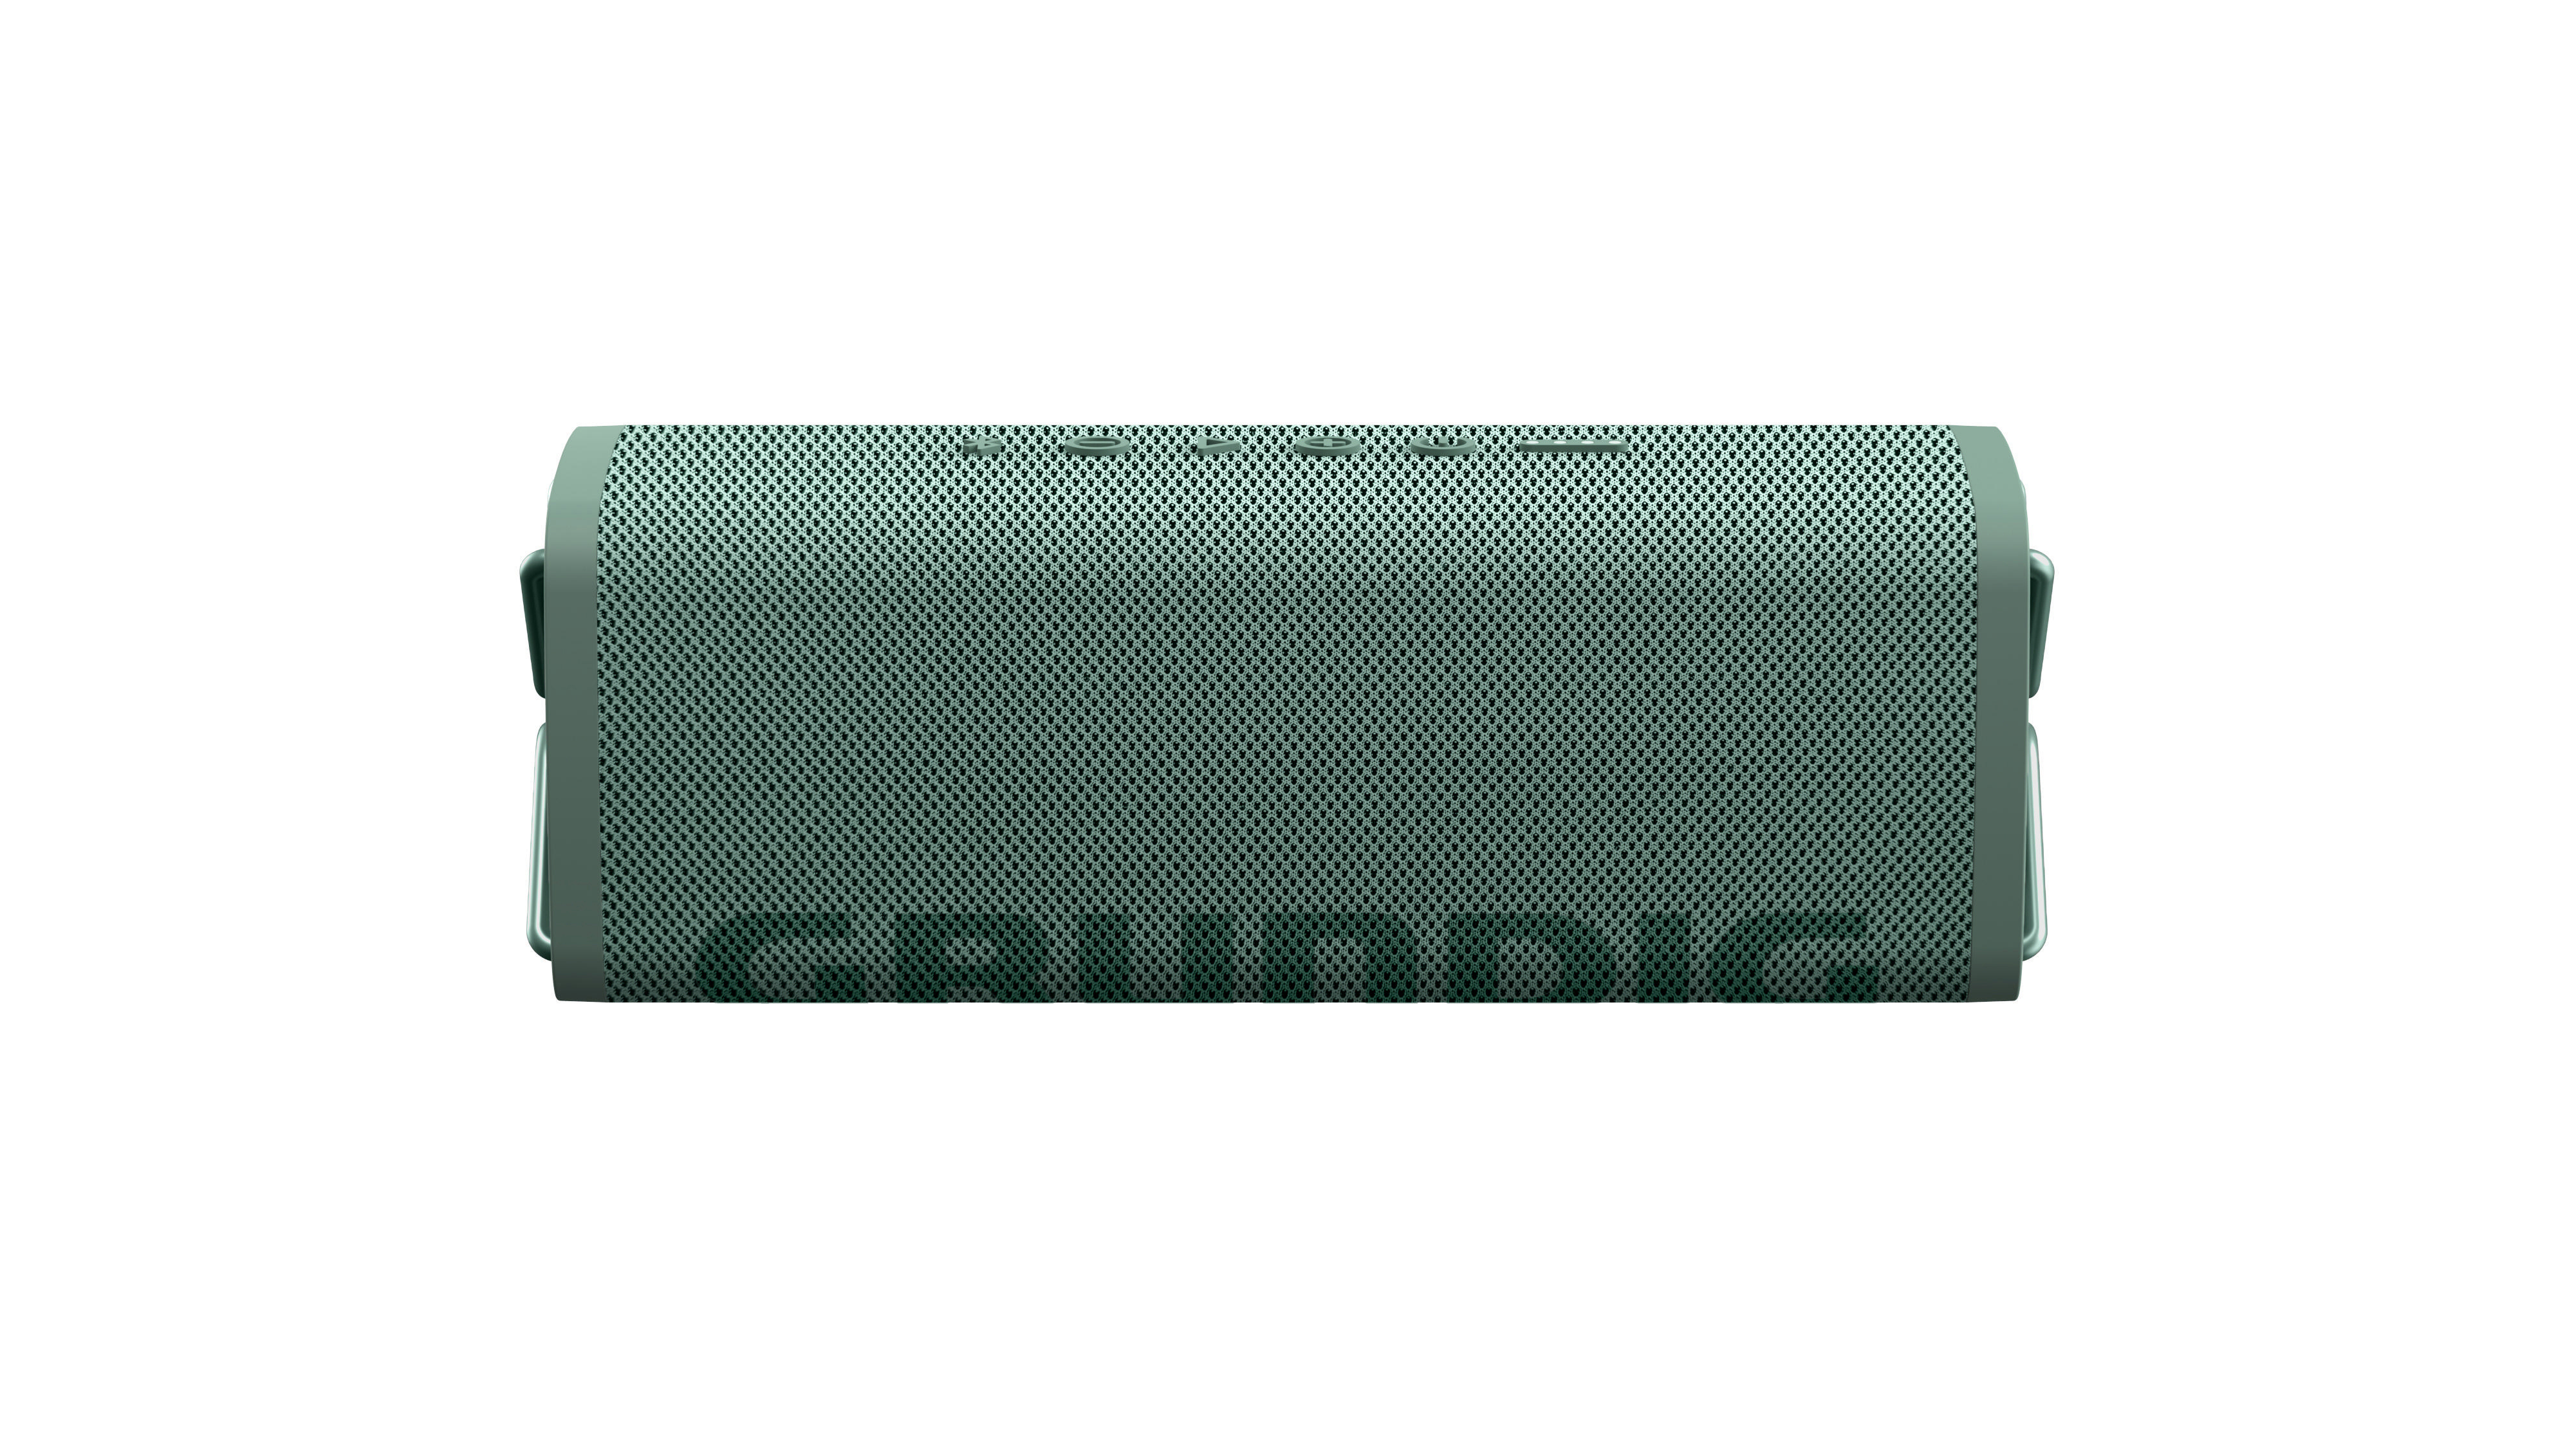 CLUB GRUNDIG Lautsprecher, Grün, Bluetooth Wasserfest GBT